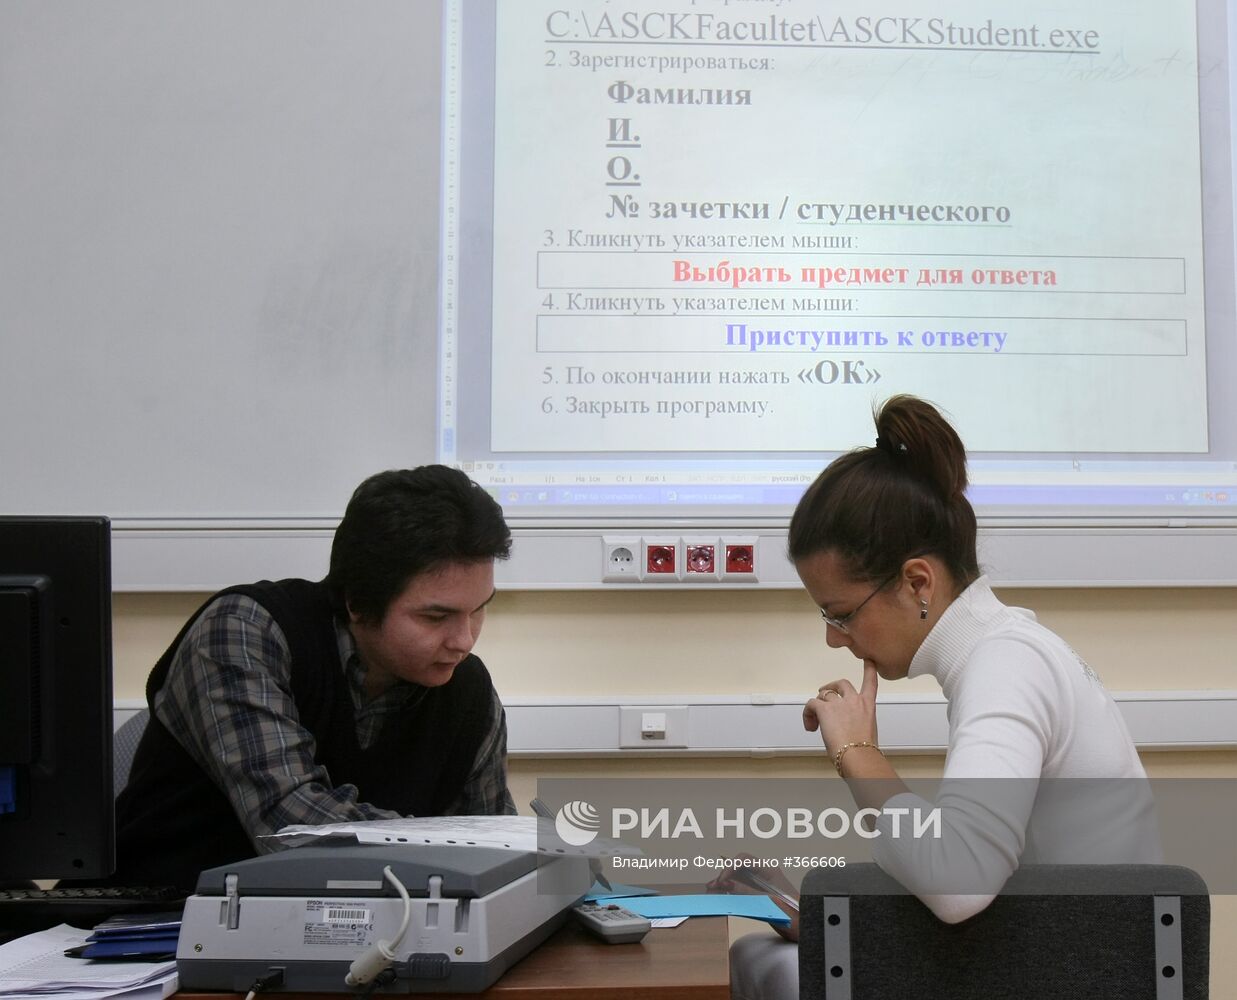 Студенты МГУ сдают зимнюю сессию